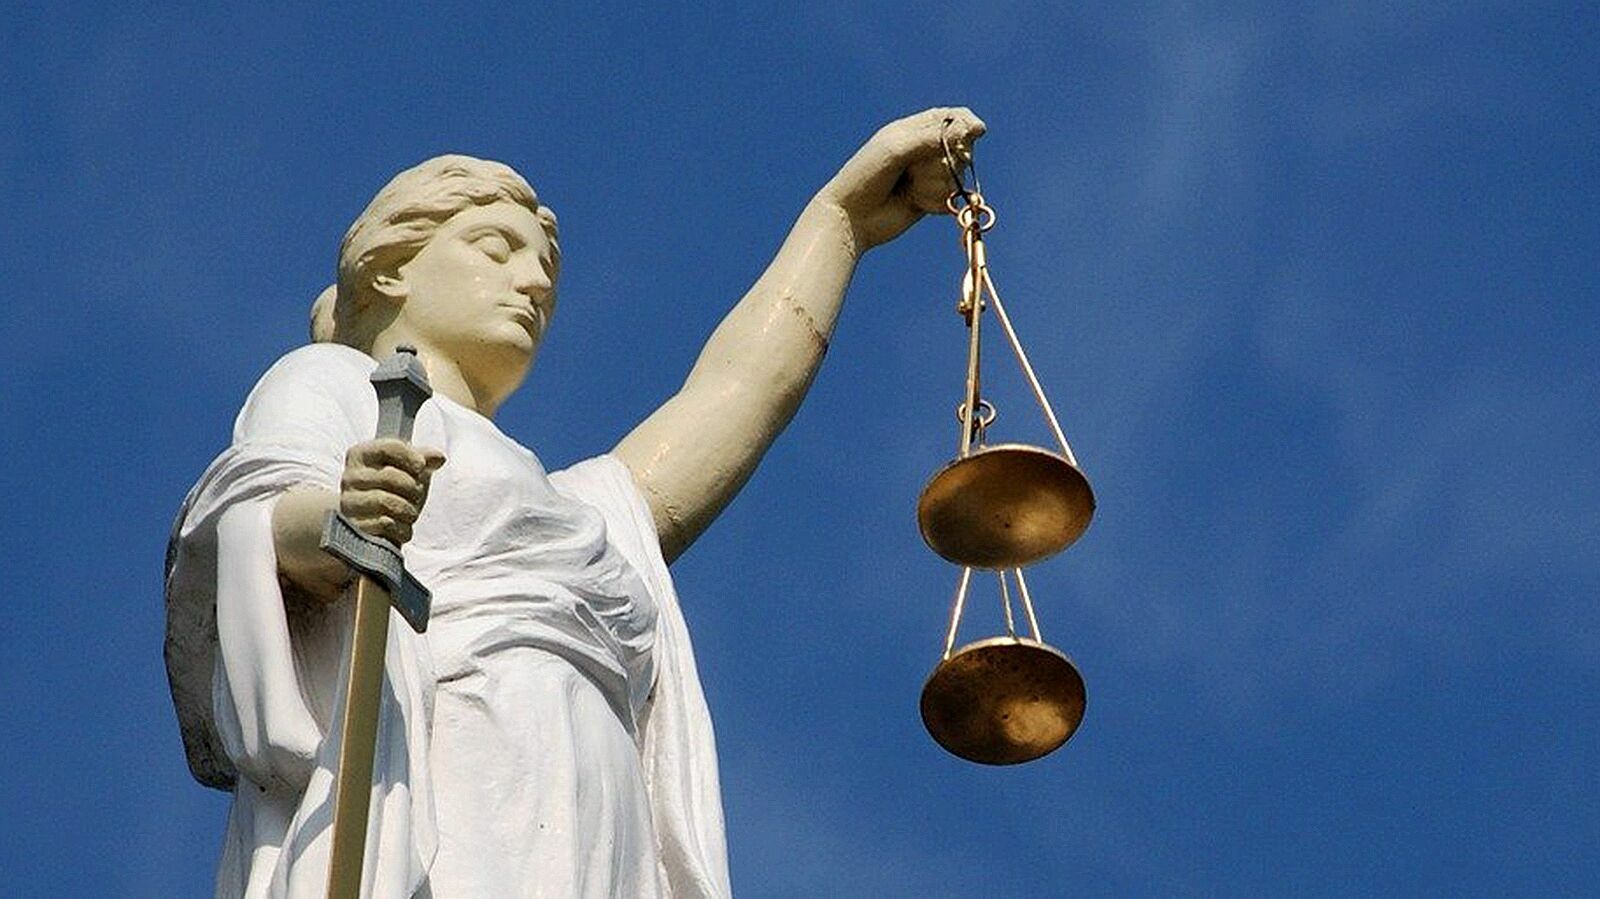 Верховный суд РФ оставил в силе уголовное преследование экс-судьи Хахалевой